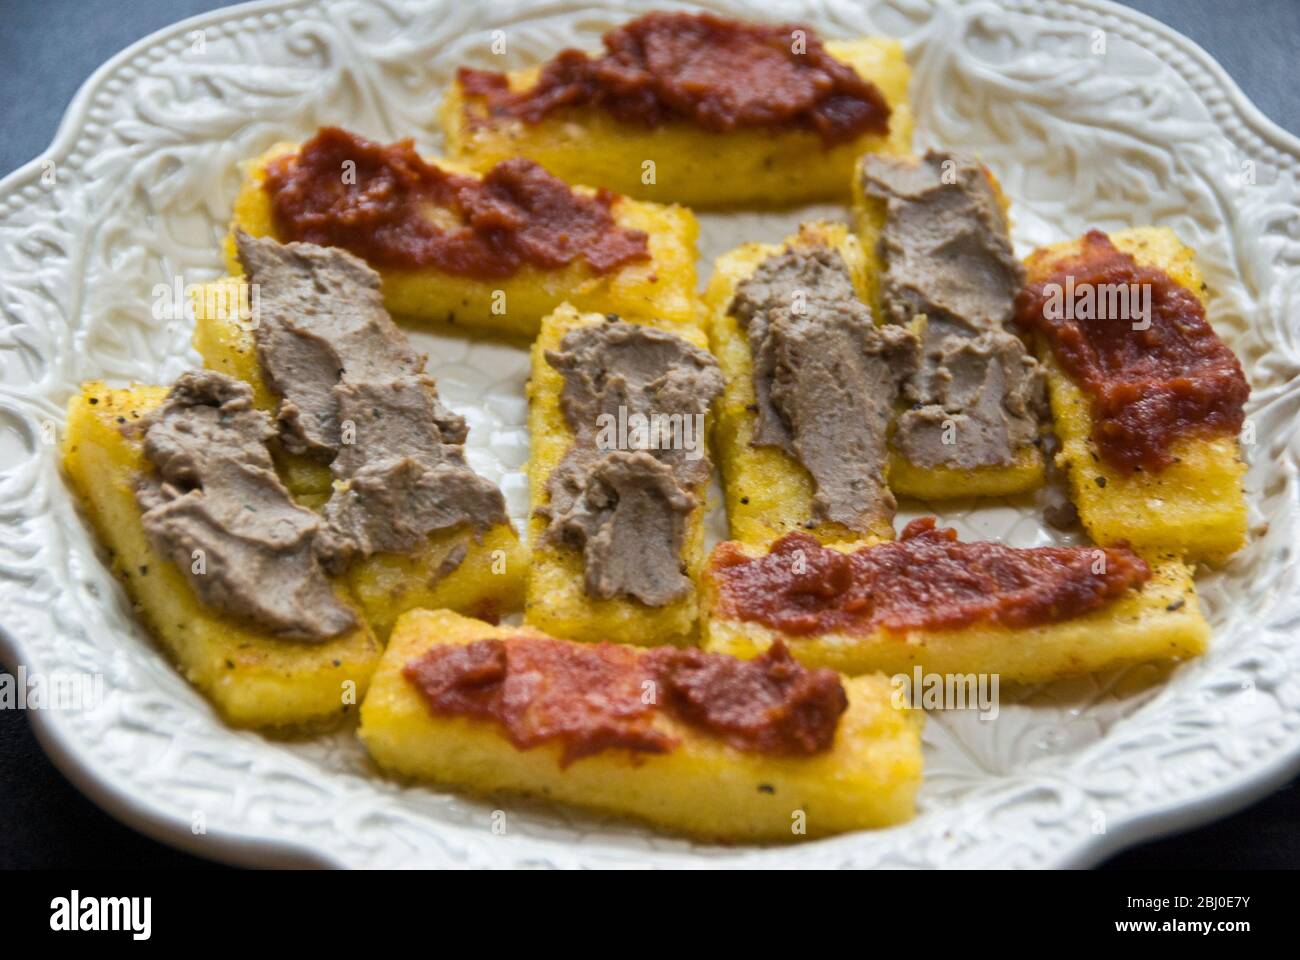 Plato de crostini de polenta frita en aceite de oliva, con paté de hígado de pollo o tomate secado al sol, servido con bebidas - Foto de stock